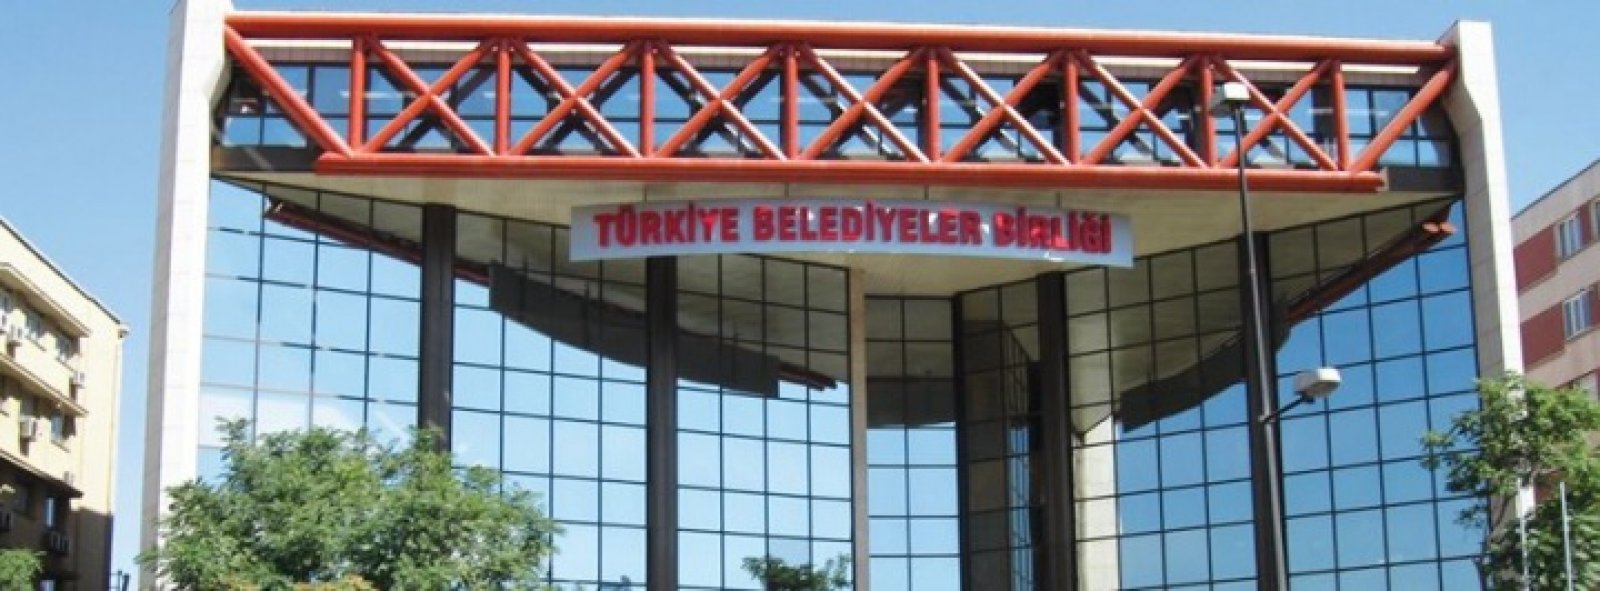 Projelerimiz: Türkiye Belediyeler Birliği Binası 